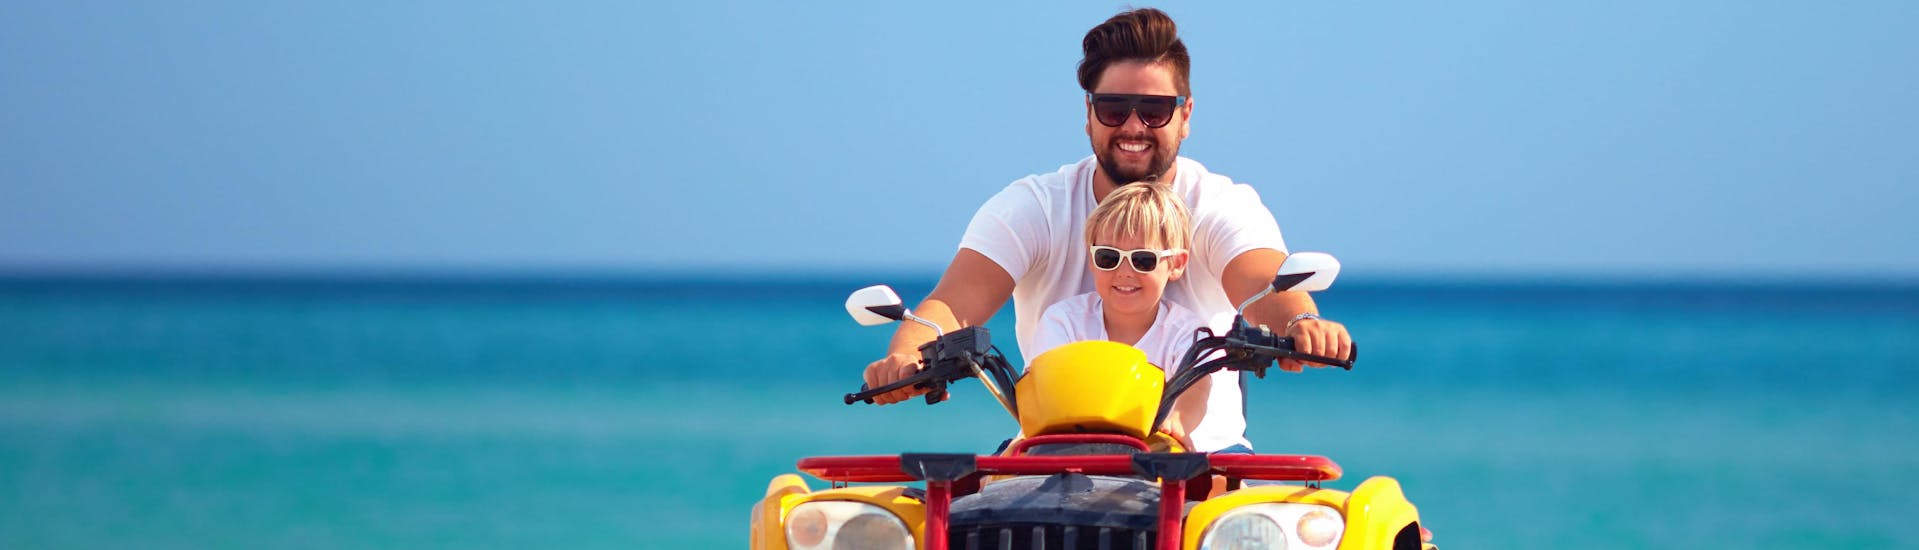 Santorini: Een vader rijdt tijdens de vakantie met zijn zoon op een quad.